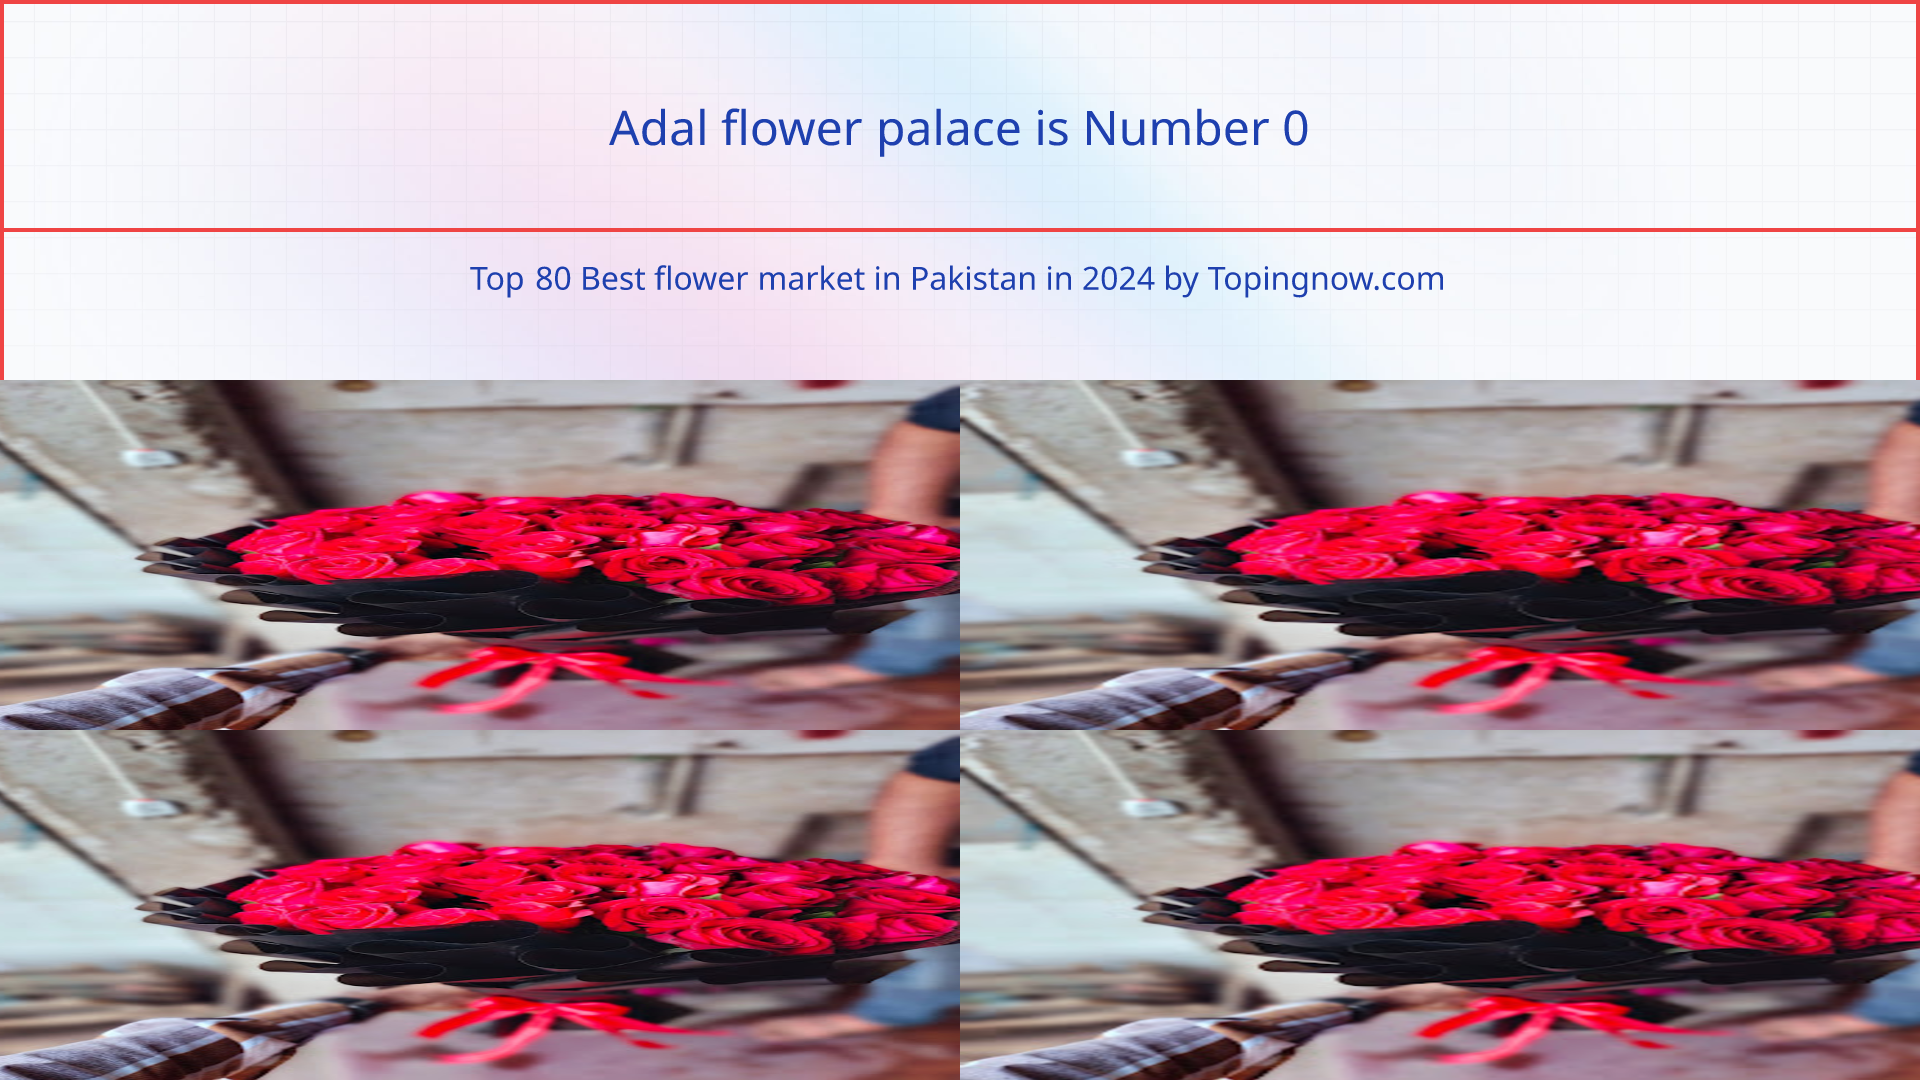 Adal flower palace: Top 80 Best flower market in Pakistan in 2024